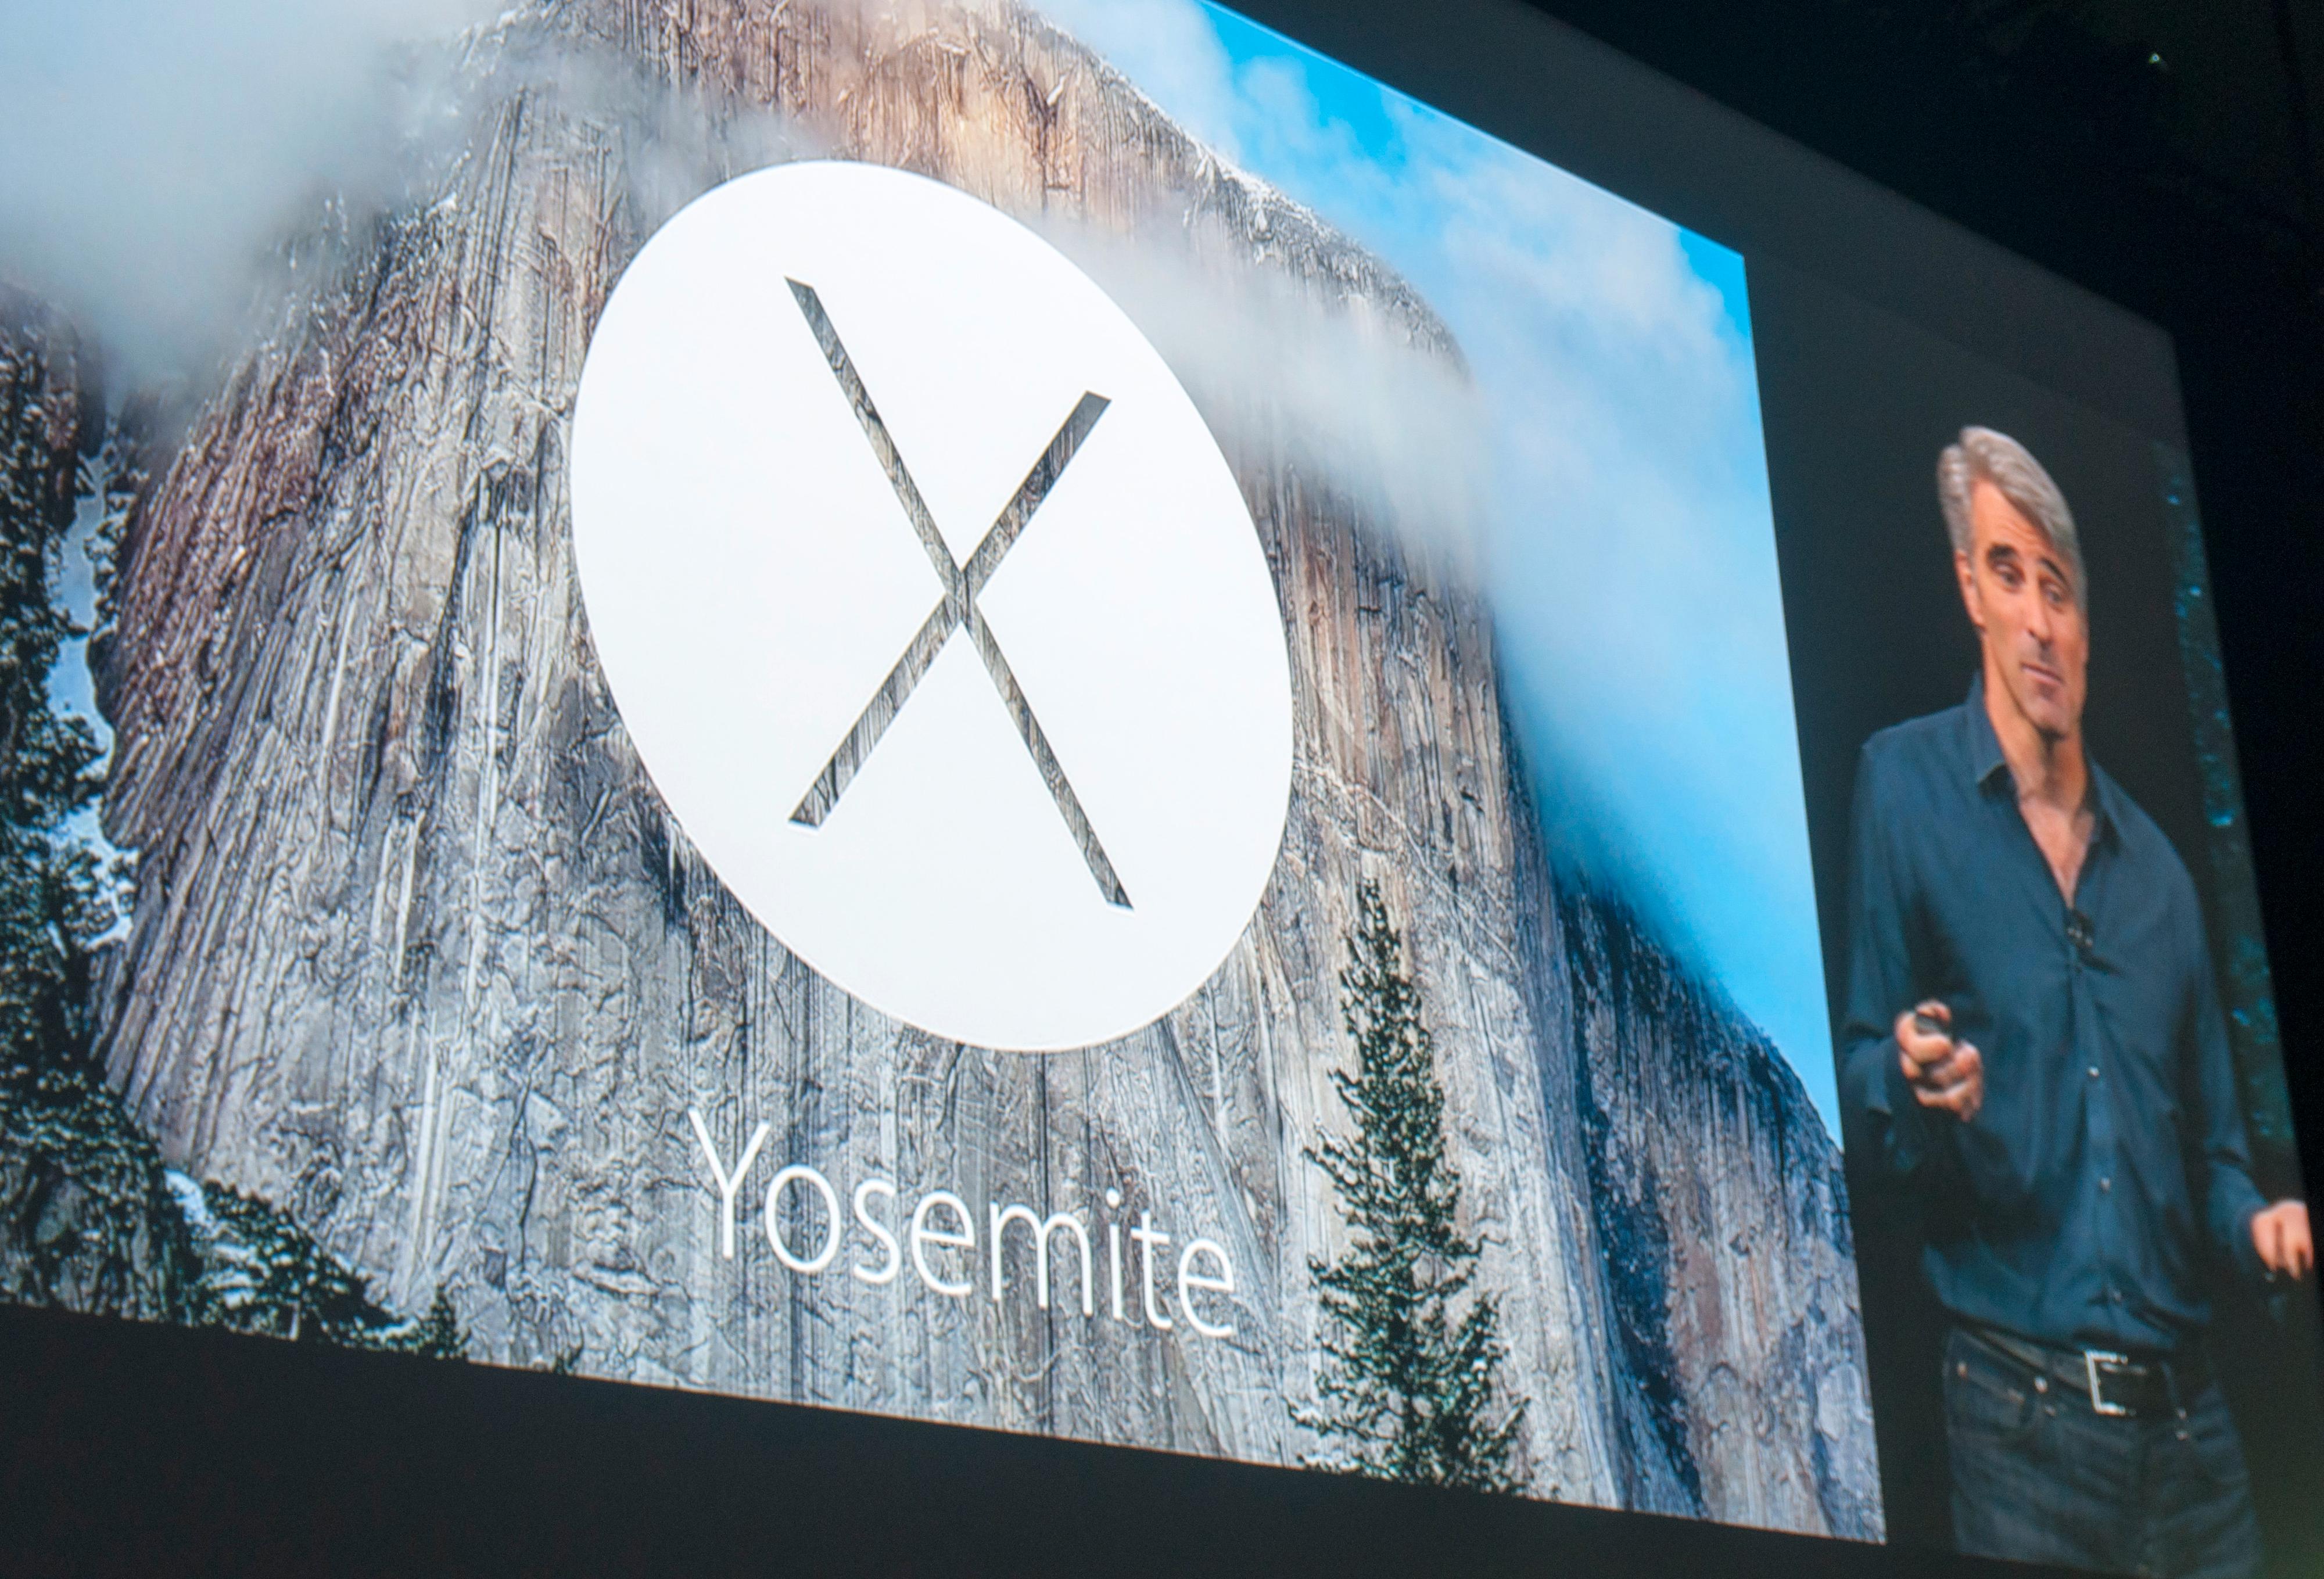 Yosemite-logoen på skjermen.Foto: Finn Jarle Kvalheim, Tek.no